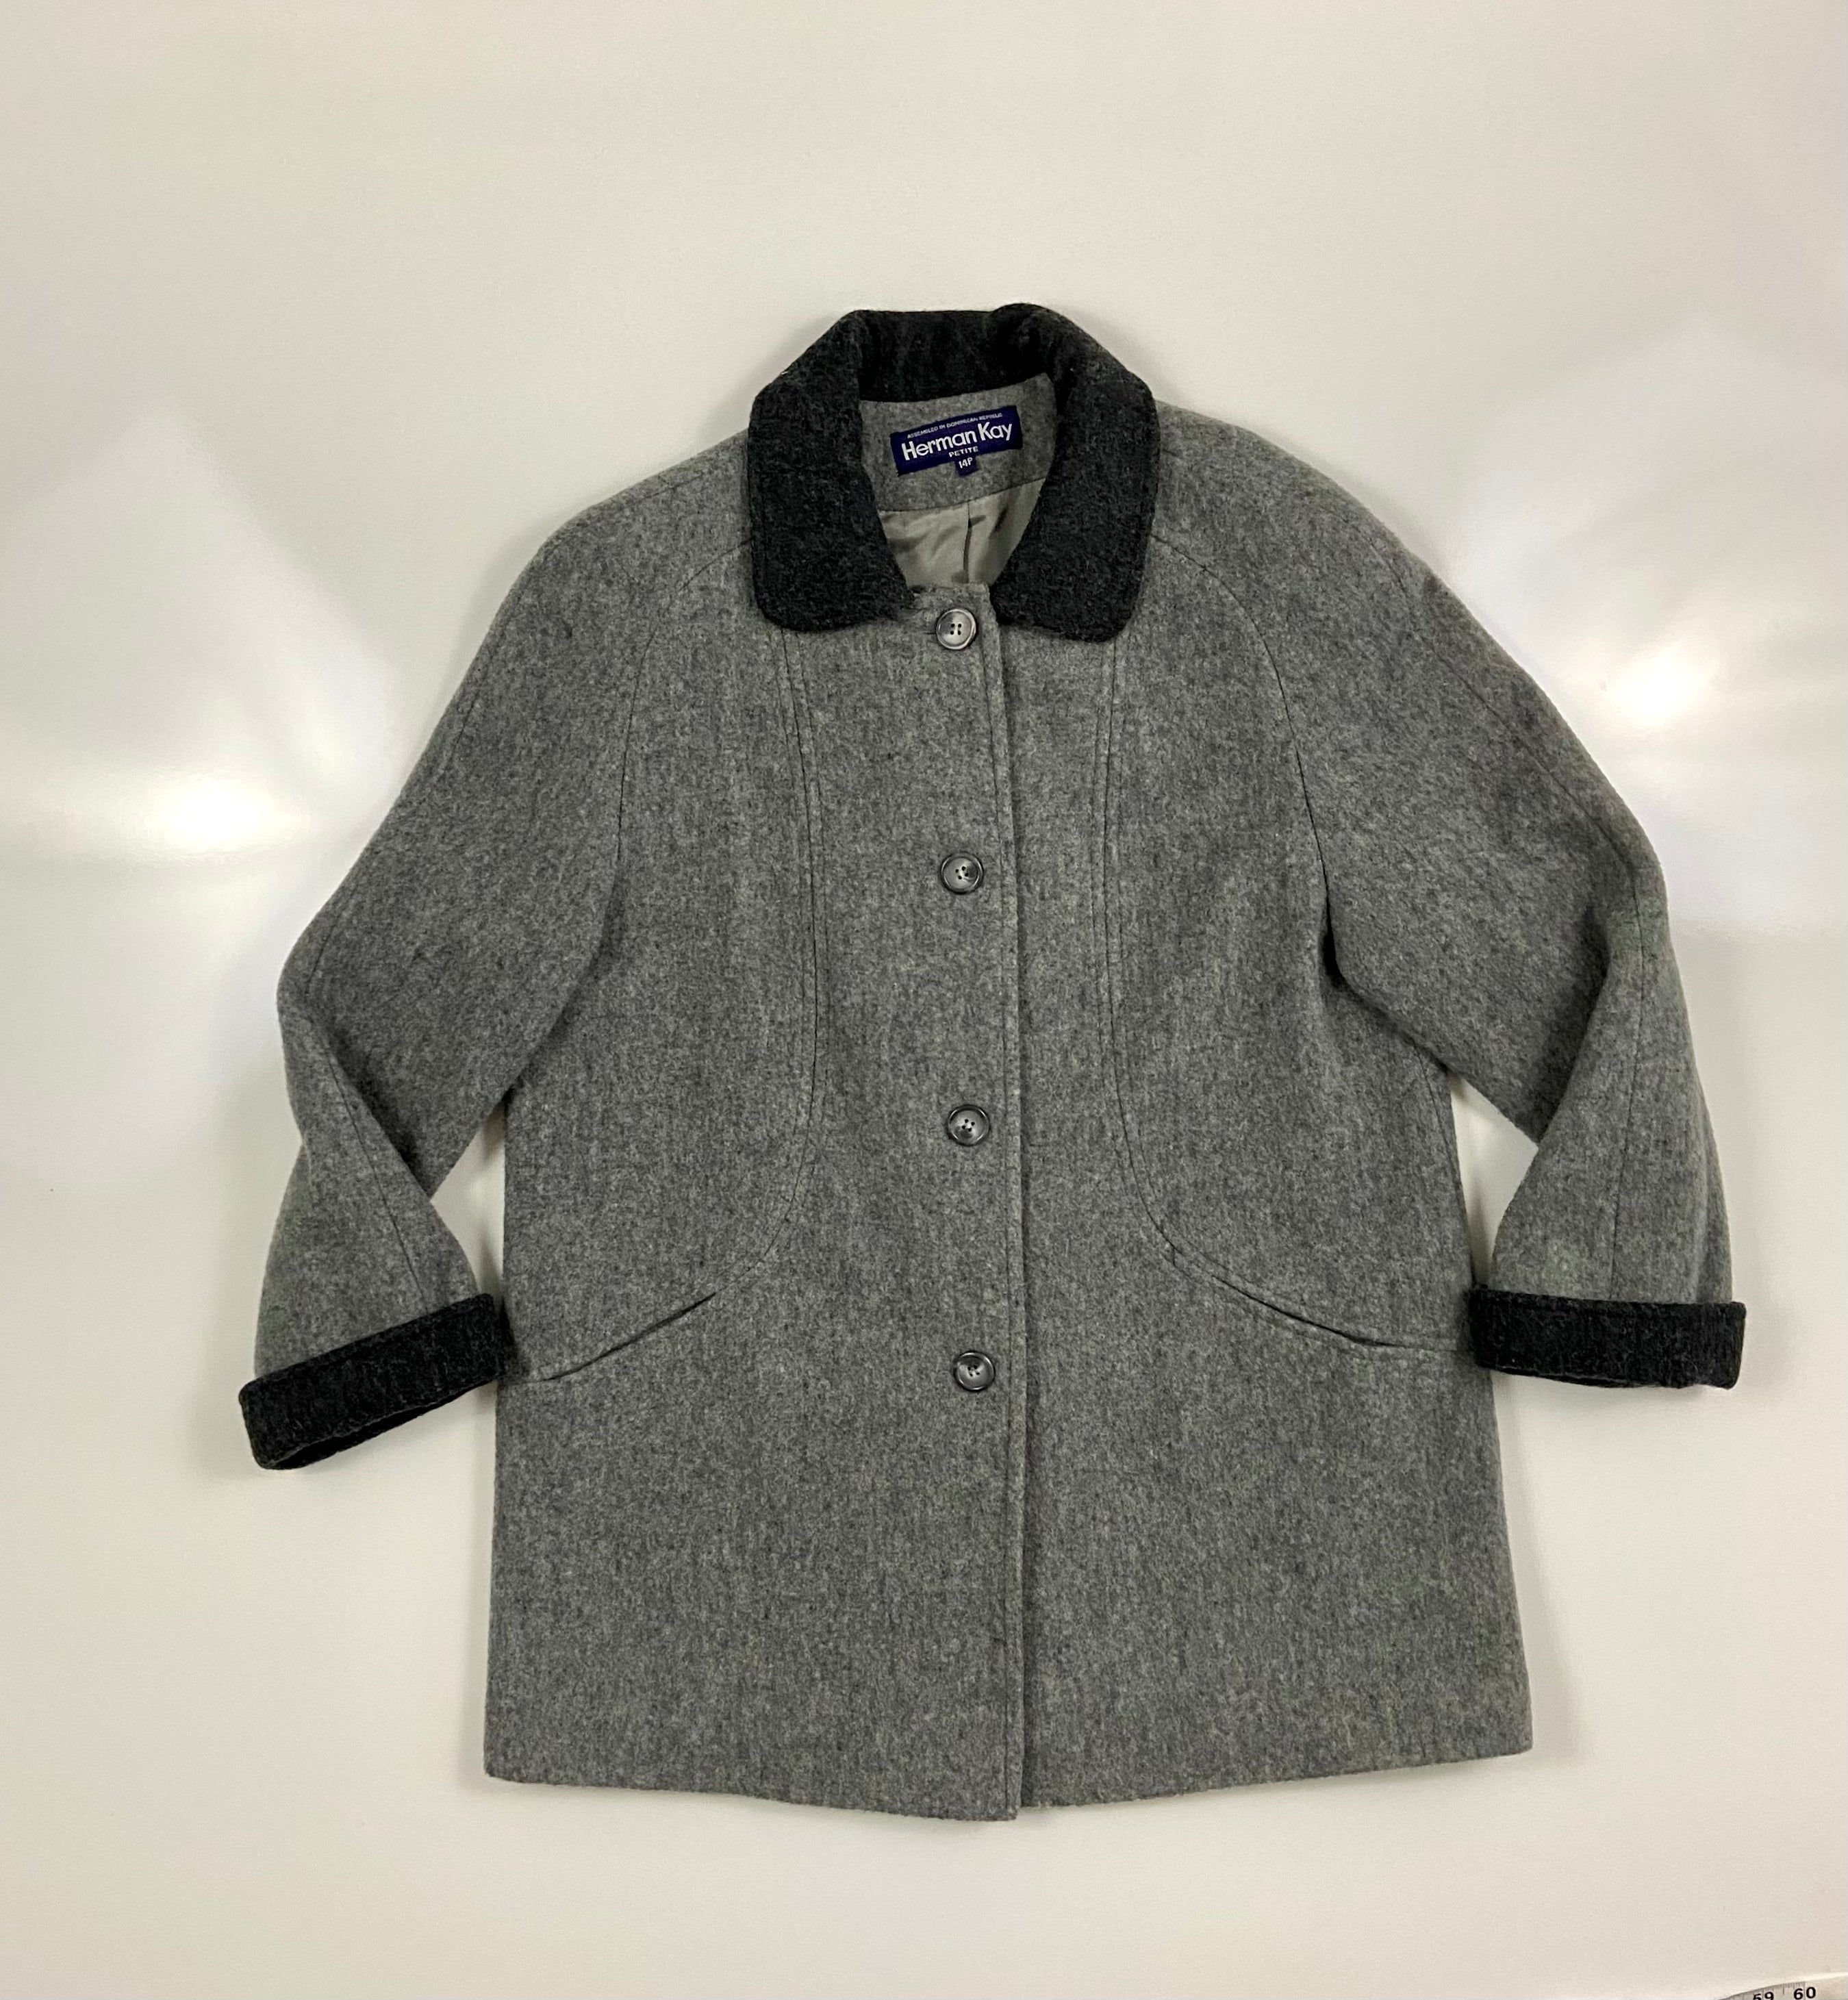 Vintage Herman Kay wool coat